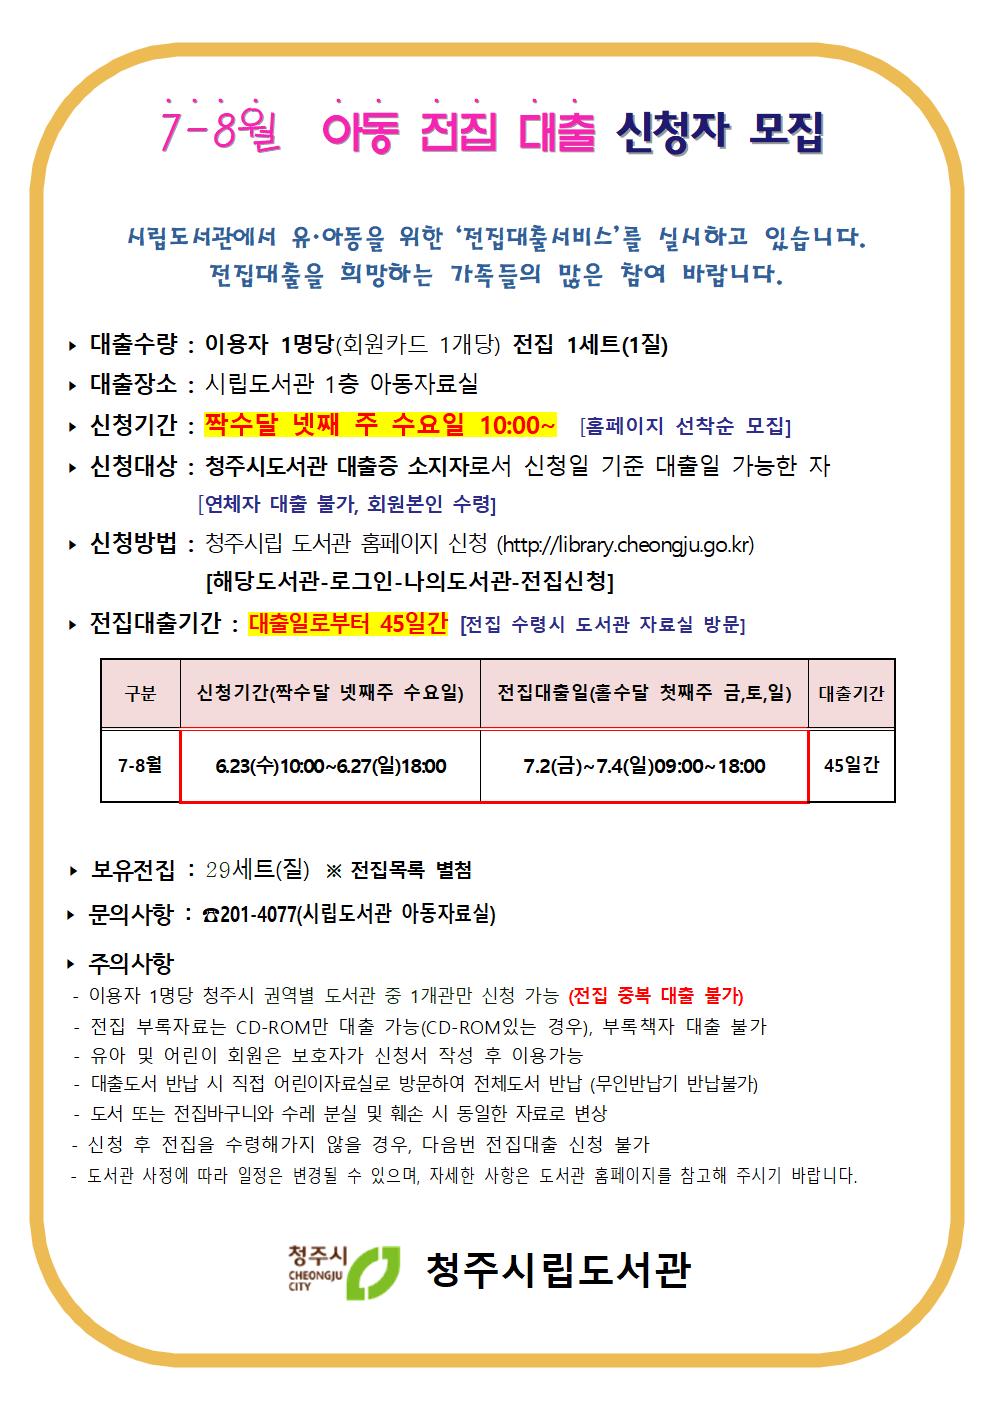 [시립도서관] 2021년 7-8월 아동전집대출 일정 안내